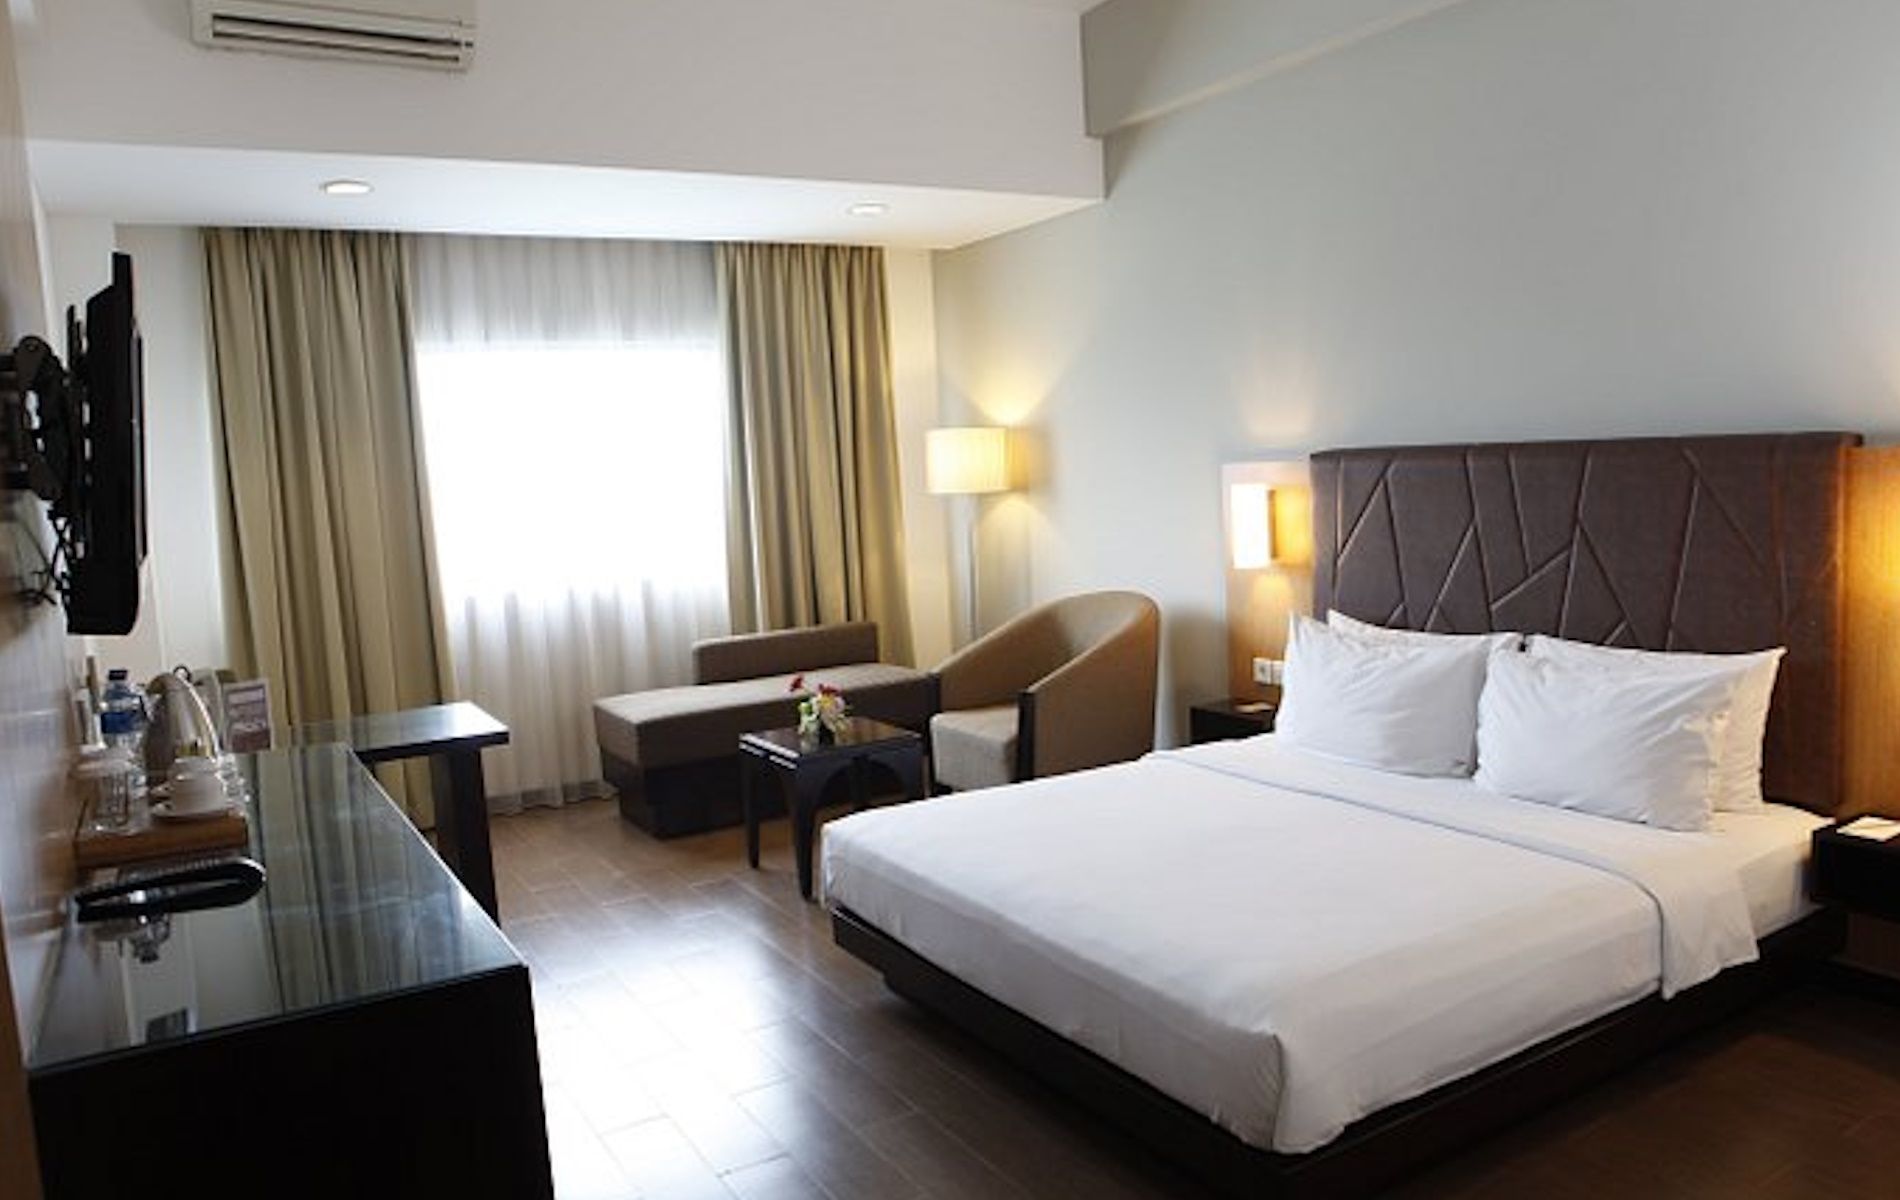 Daftar hotel murah di Kota Bogor dekat dengan stasiun.